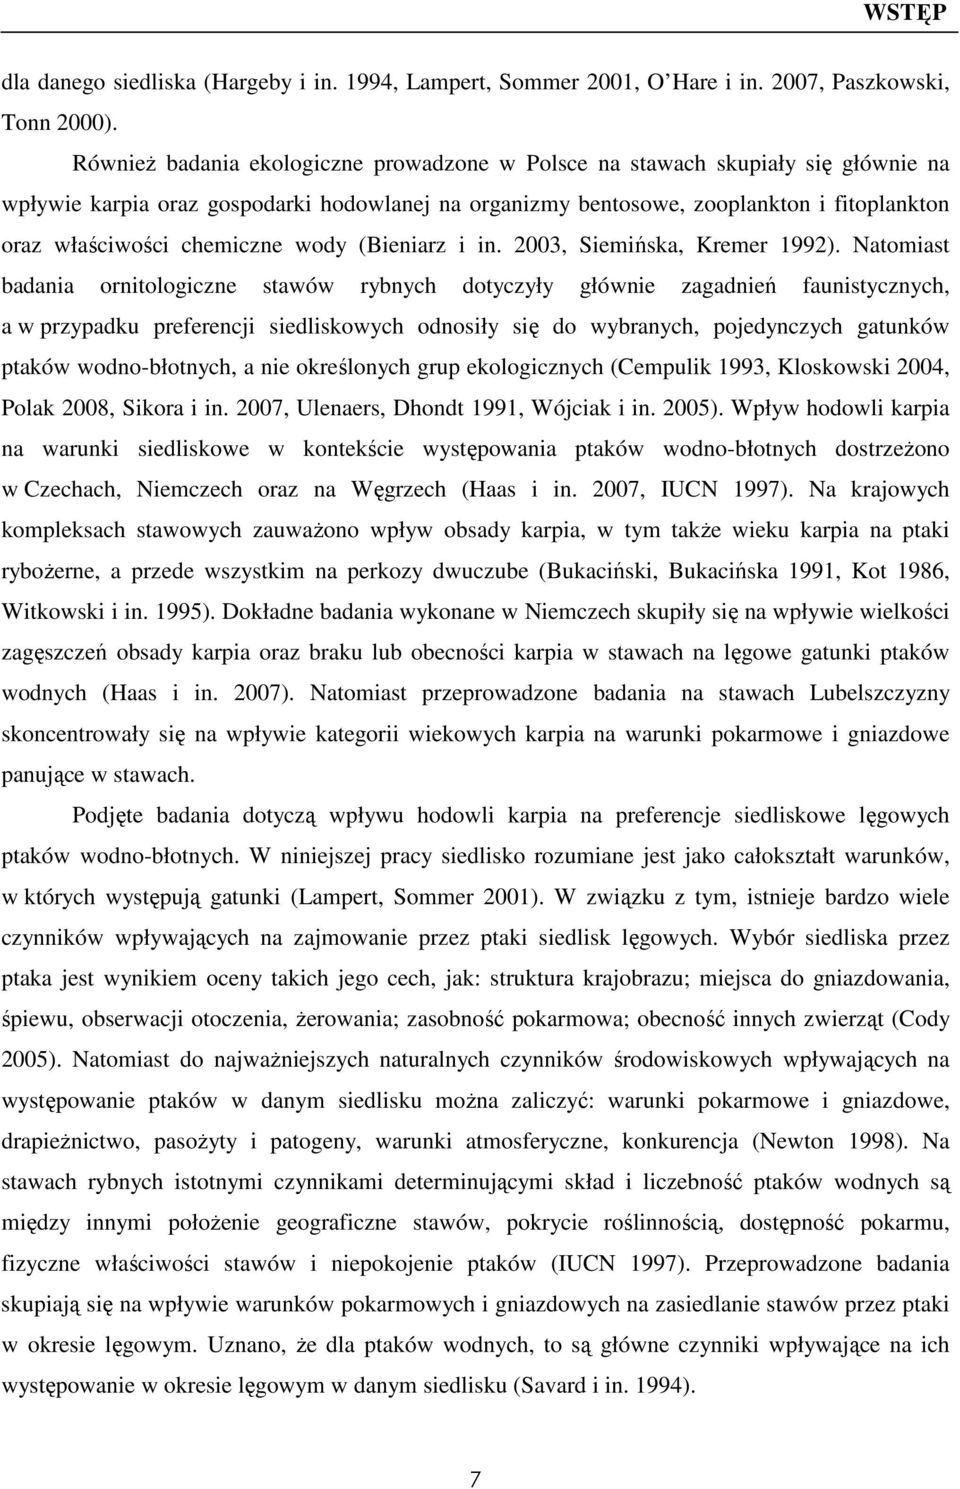 chemiczne wody (Bieniarz i in. 2003, Siemińska, Kremer 1992).